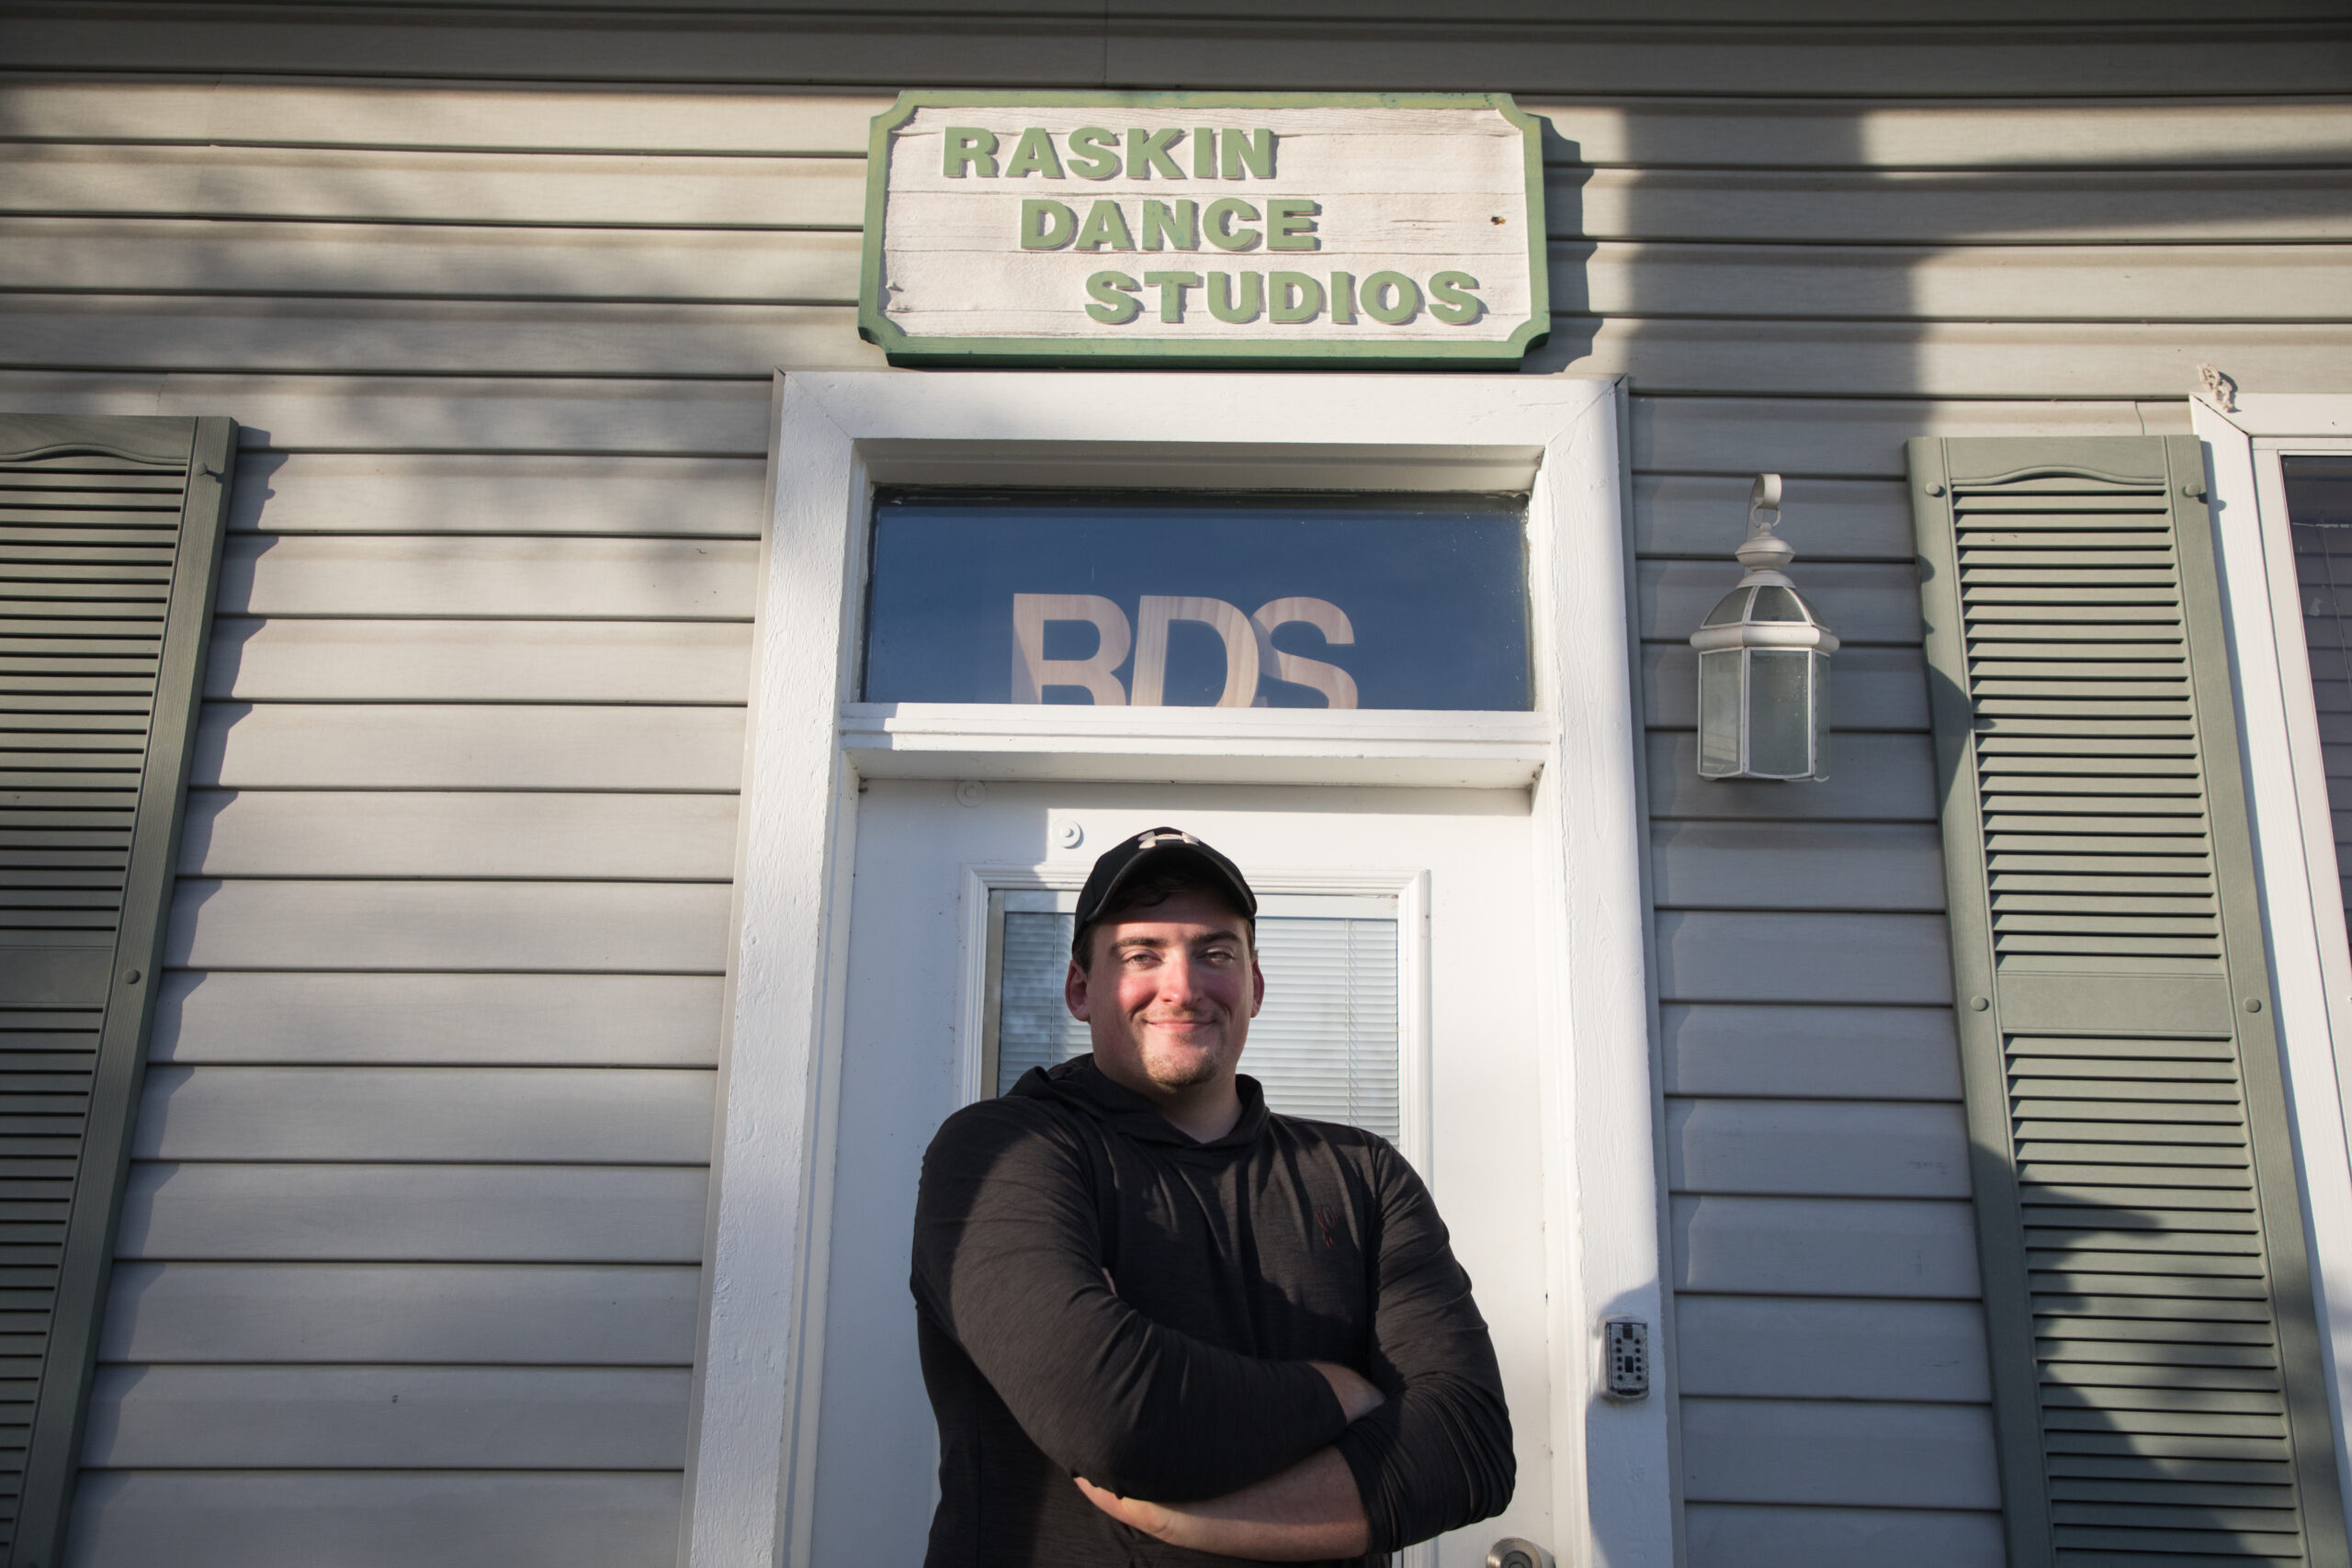 Josh Nixon poses in front of the Raskin Dance Studio’s front door. He crosses his arms and stands beneath the studio’s sign.